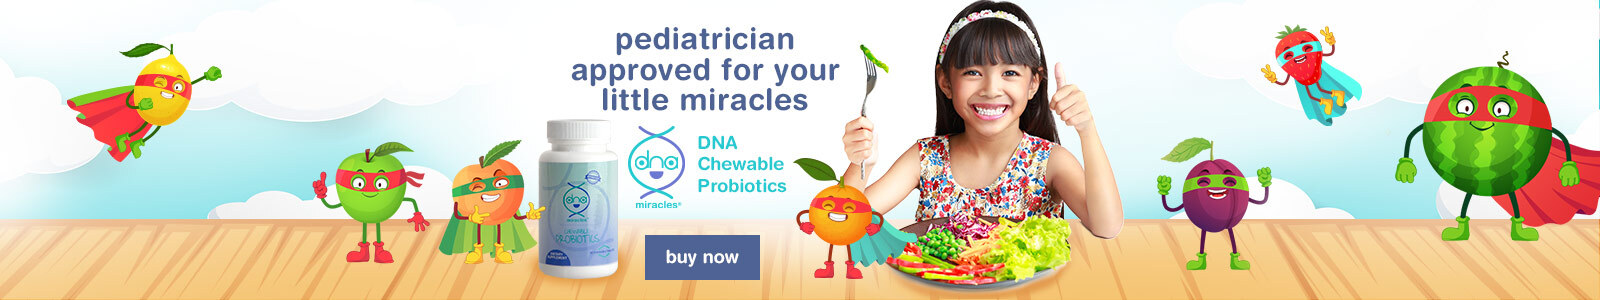 DNA chewable probiotics